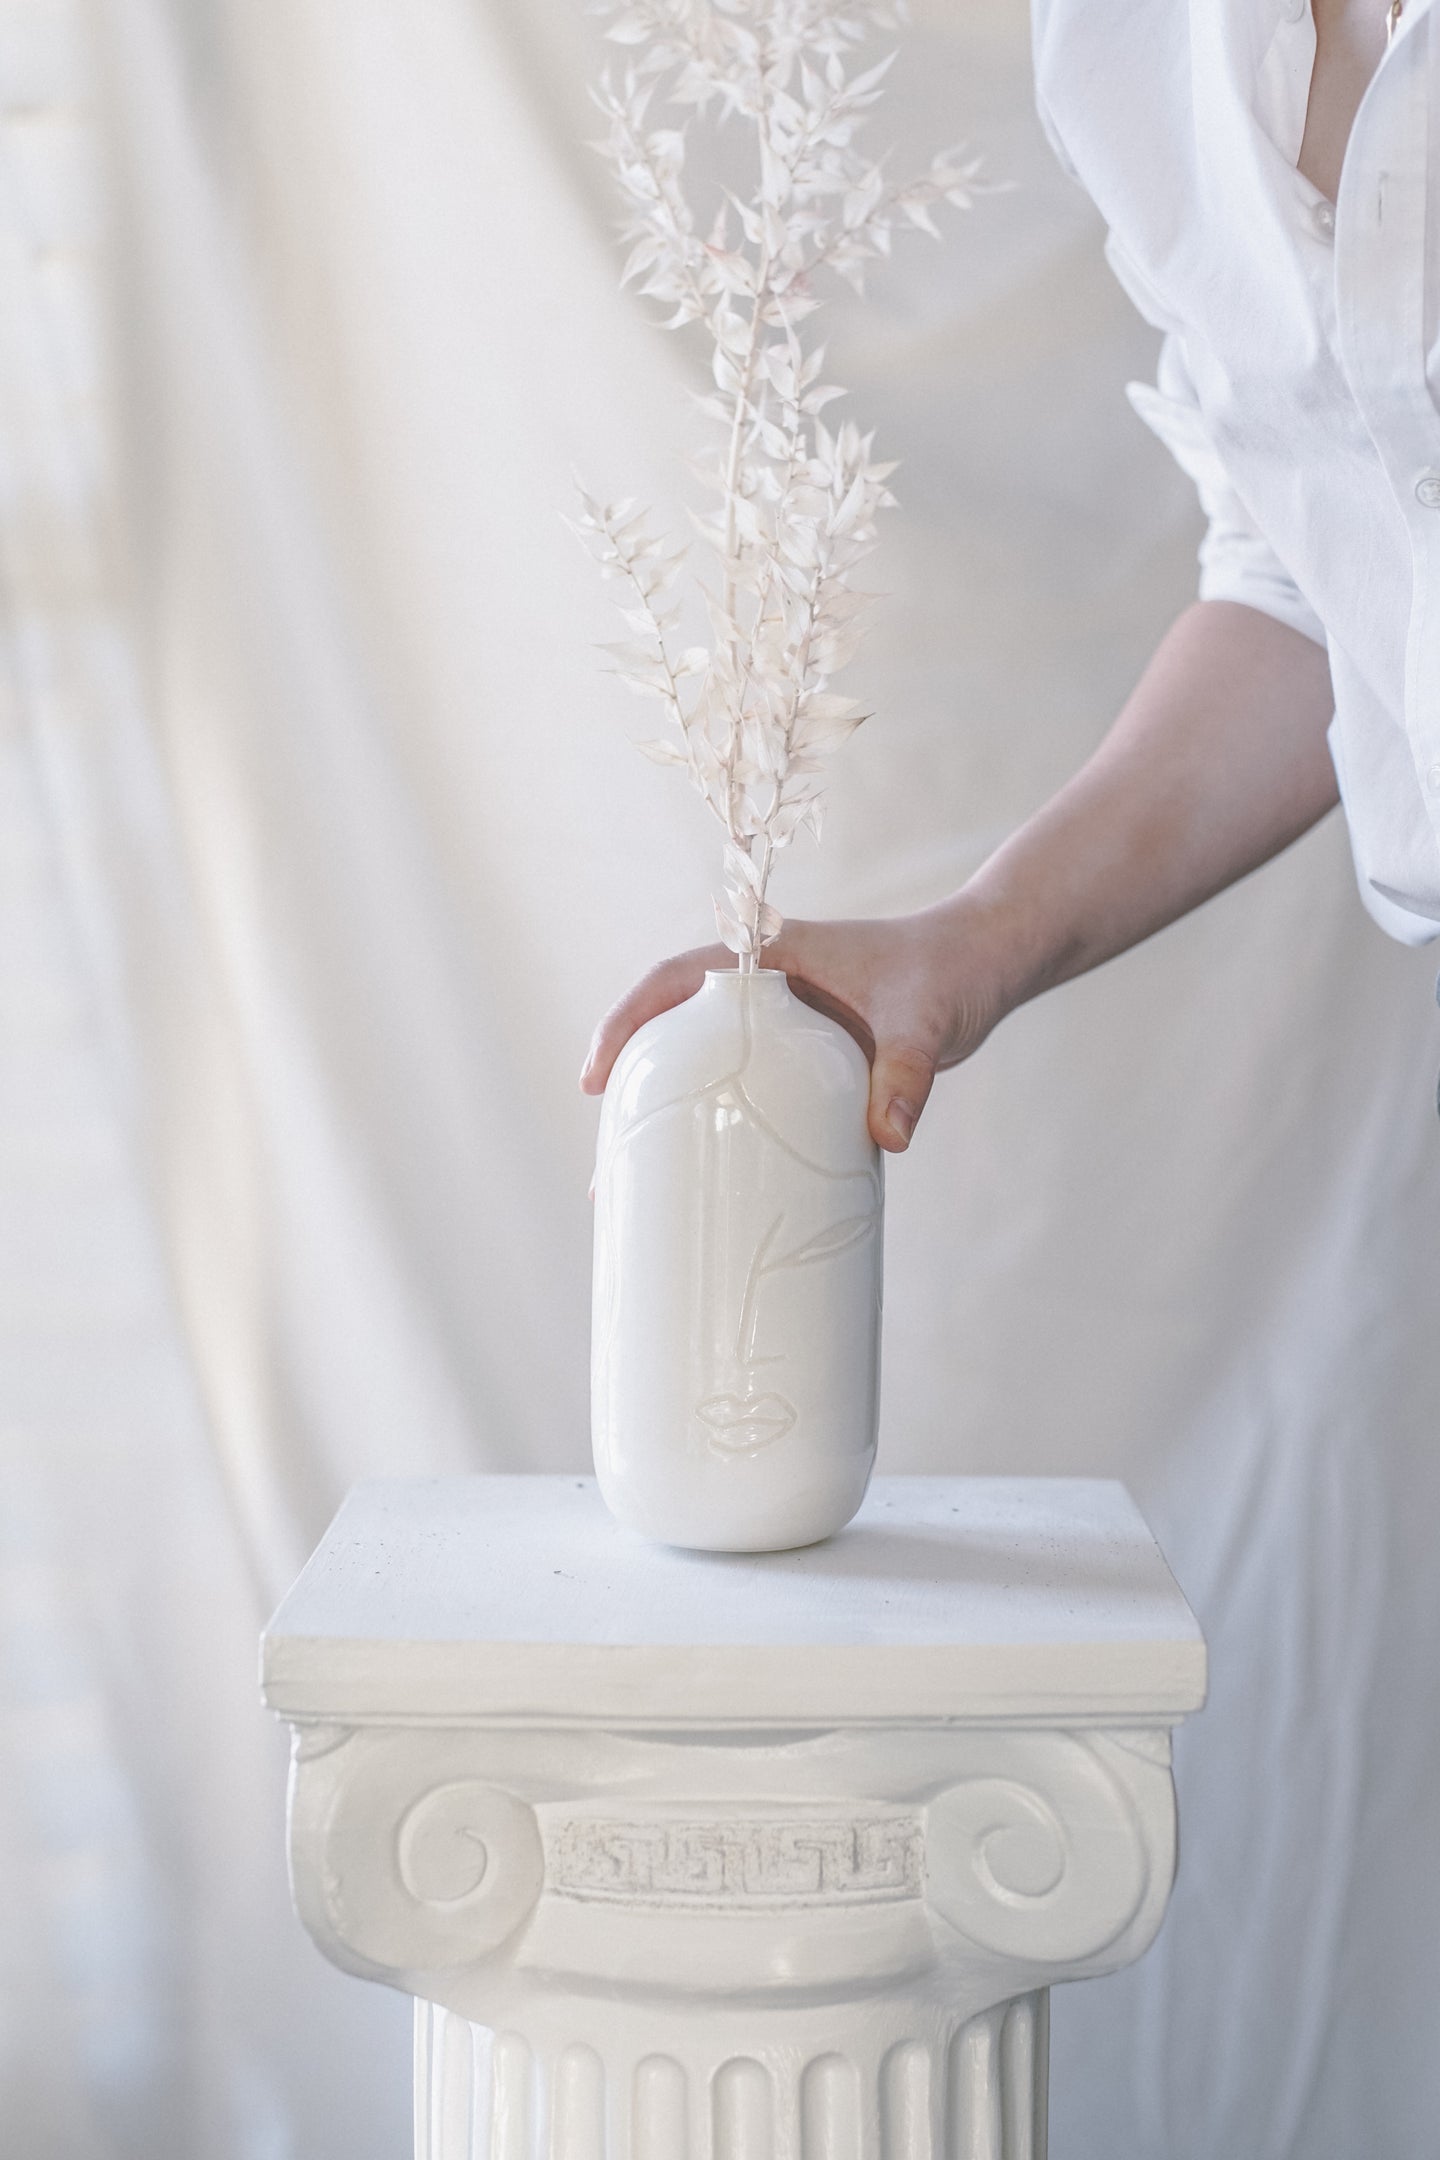 Porcelain Face Vase